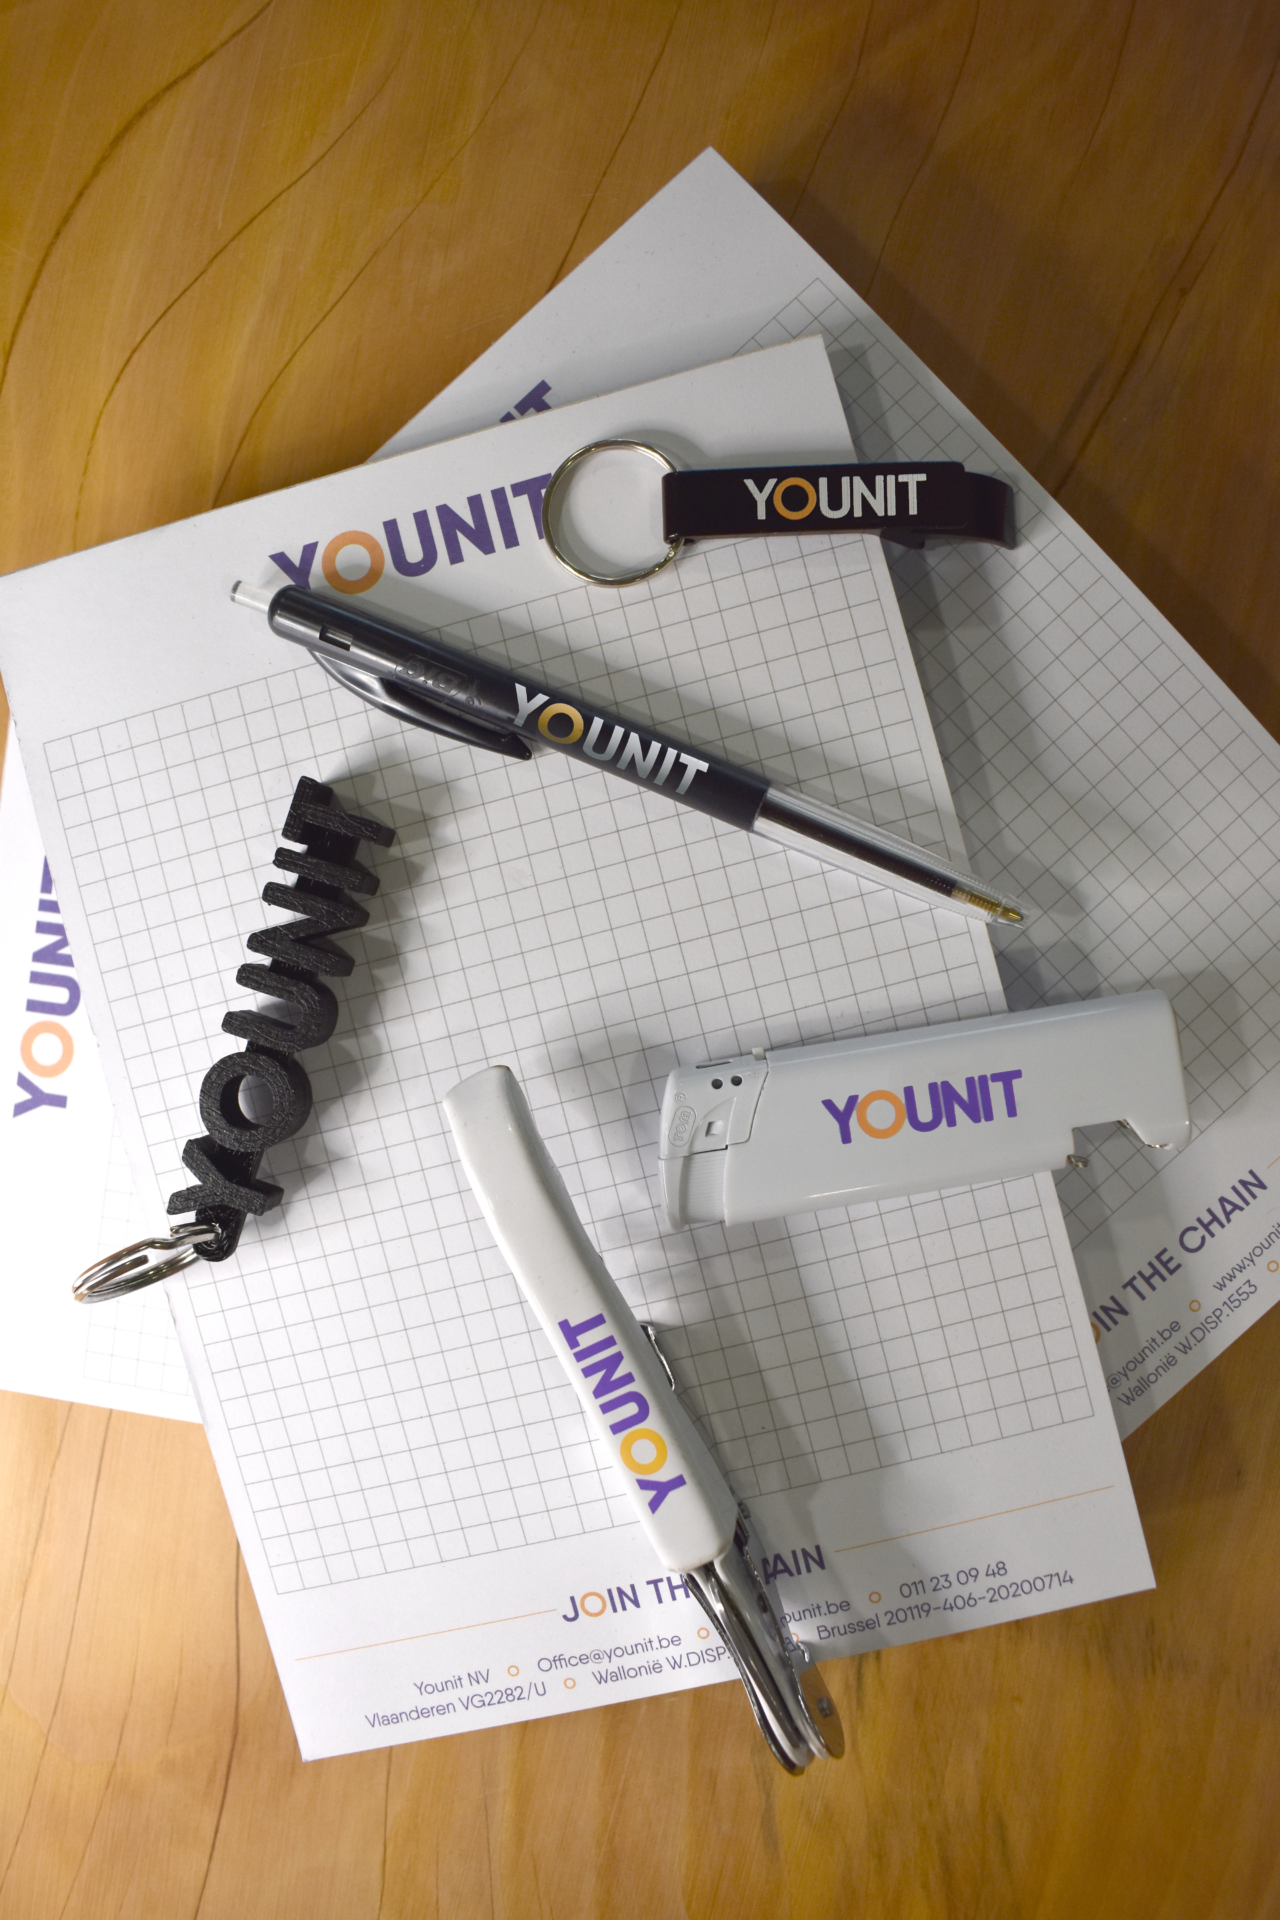 Enkele gadgets van Younit waaronder een aansteker, een pen en een sleutelhanger